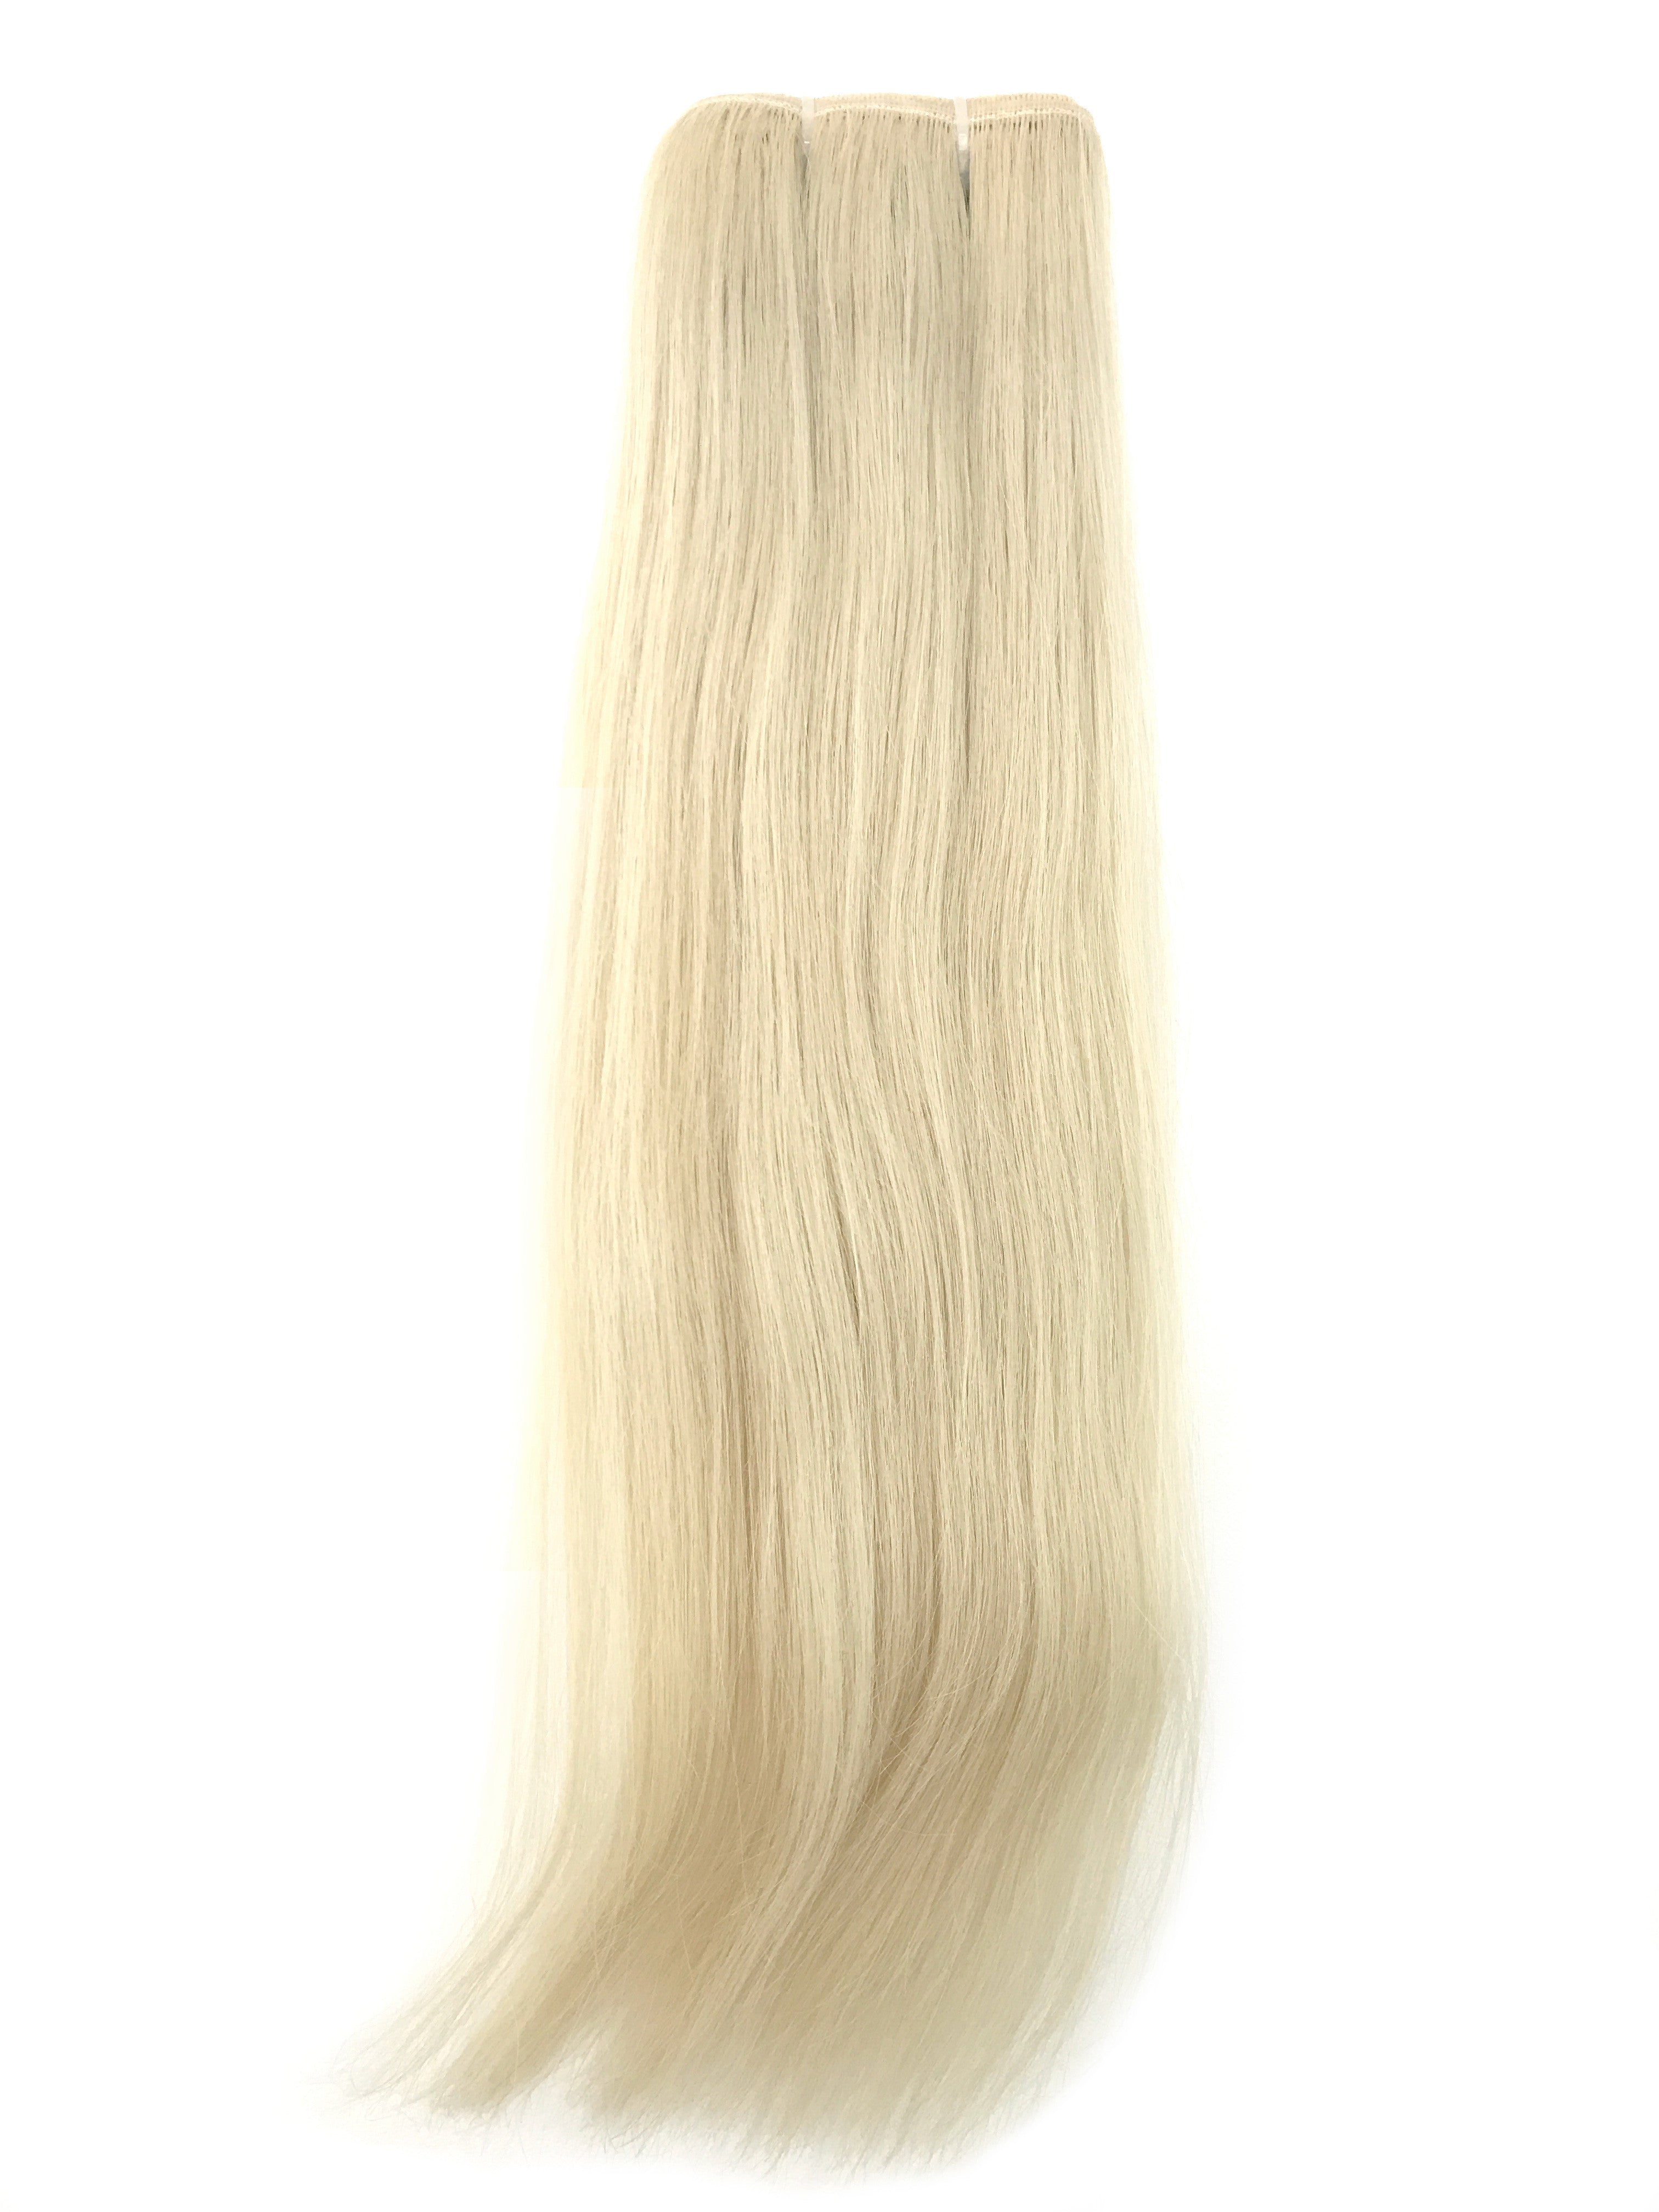 blonde hair extensions human hair